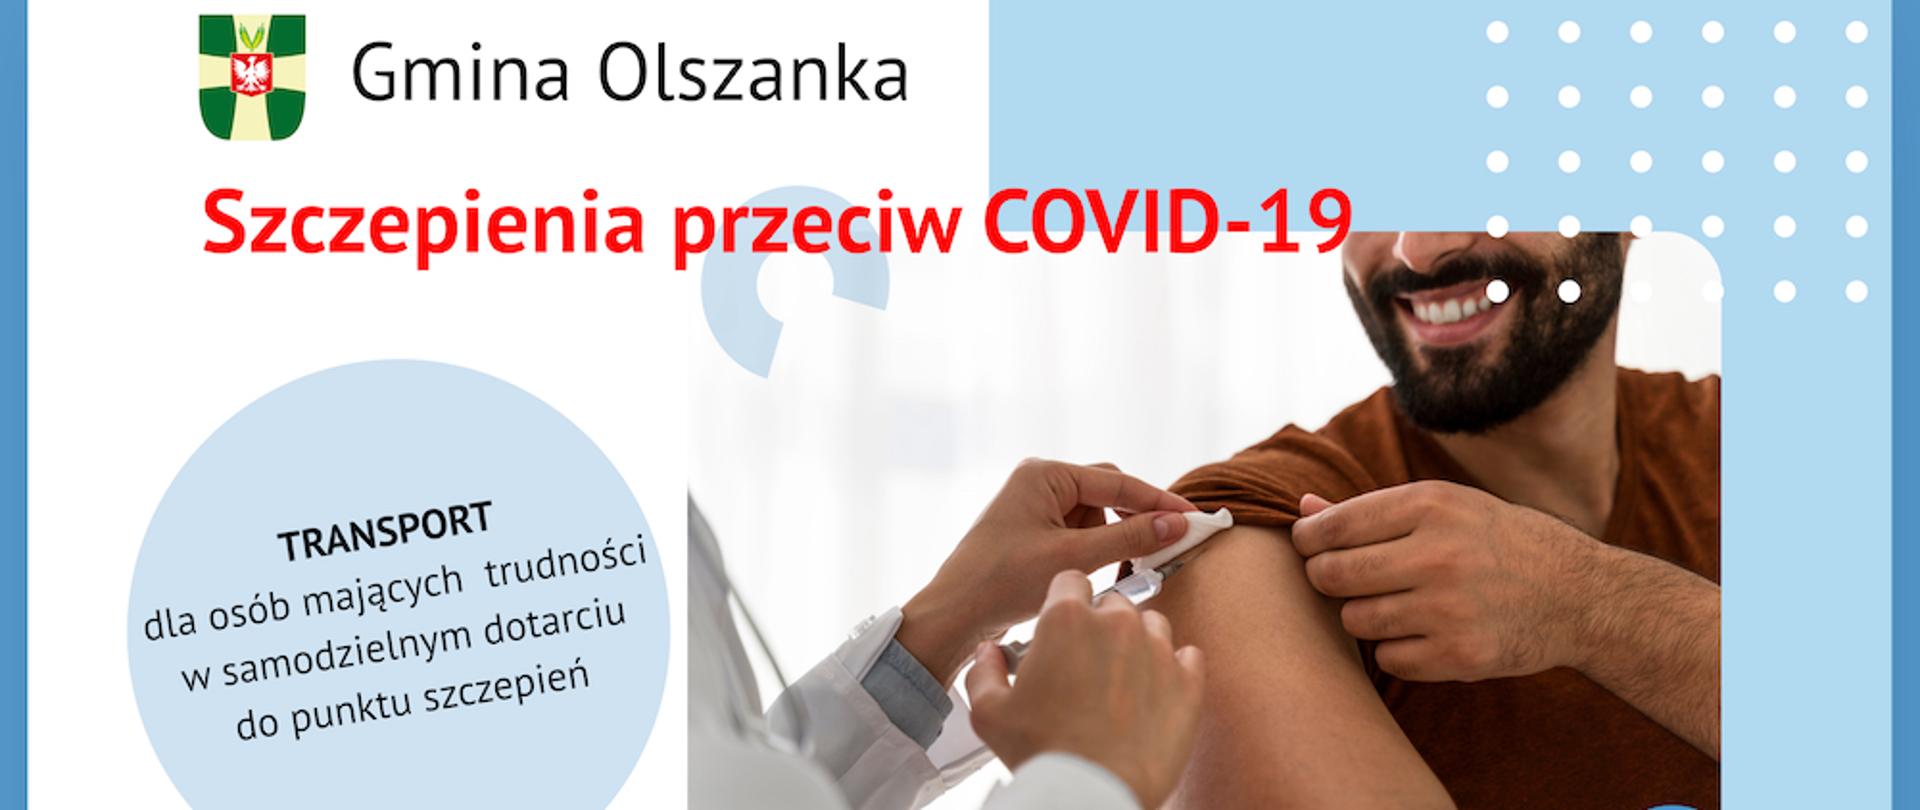 Szczepienia przeciw COVID-19 w Gminie Olszanka - broszura informacyjna